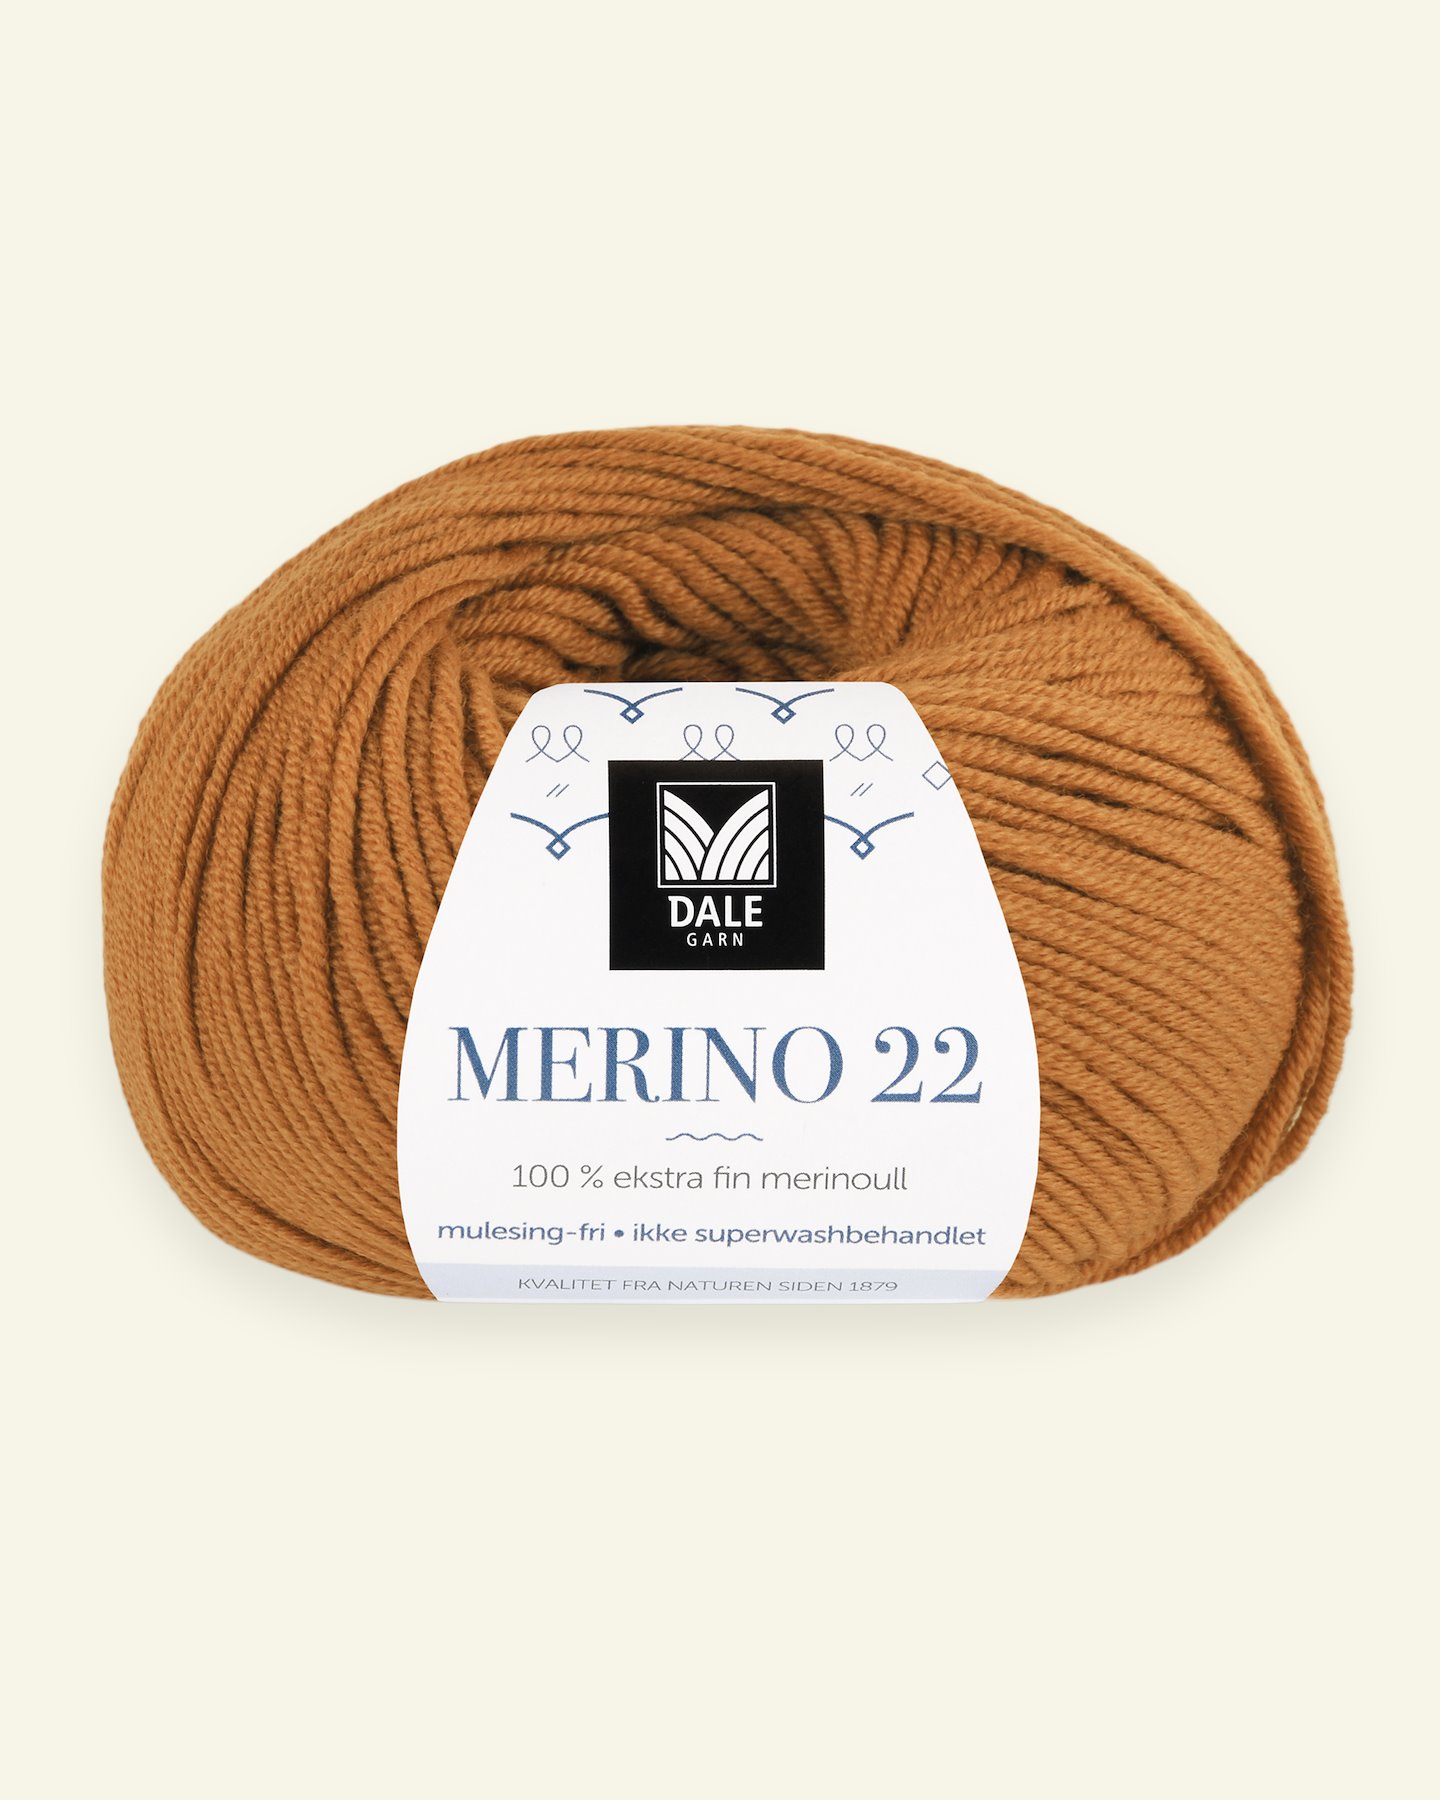 Dale Garn, 100% extra fine merino wool yarn, "Merino 22", bruned orange (2019) 90000380_pack